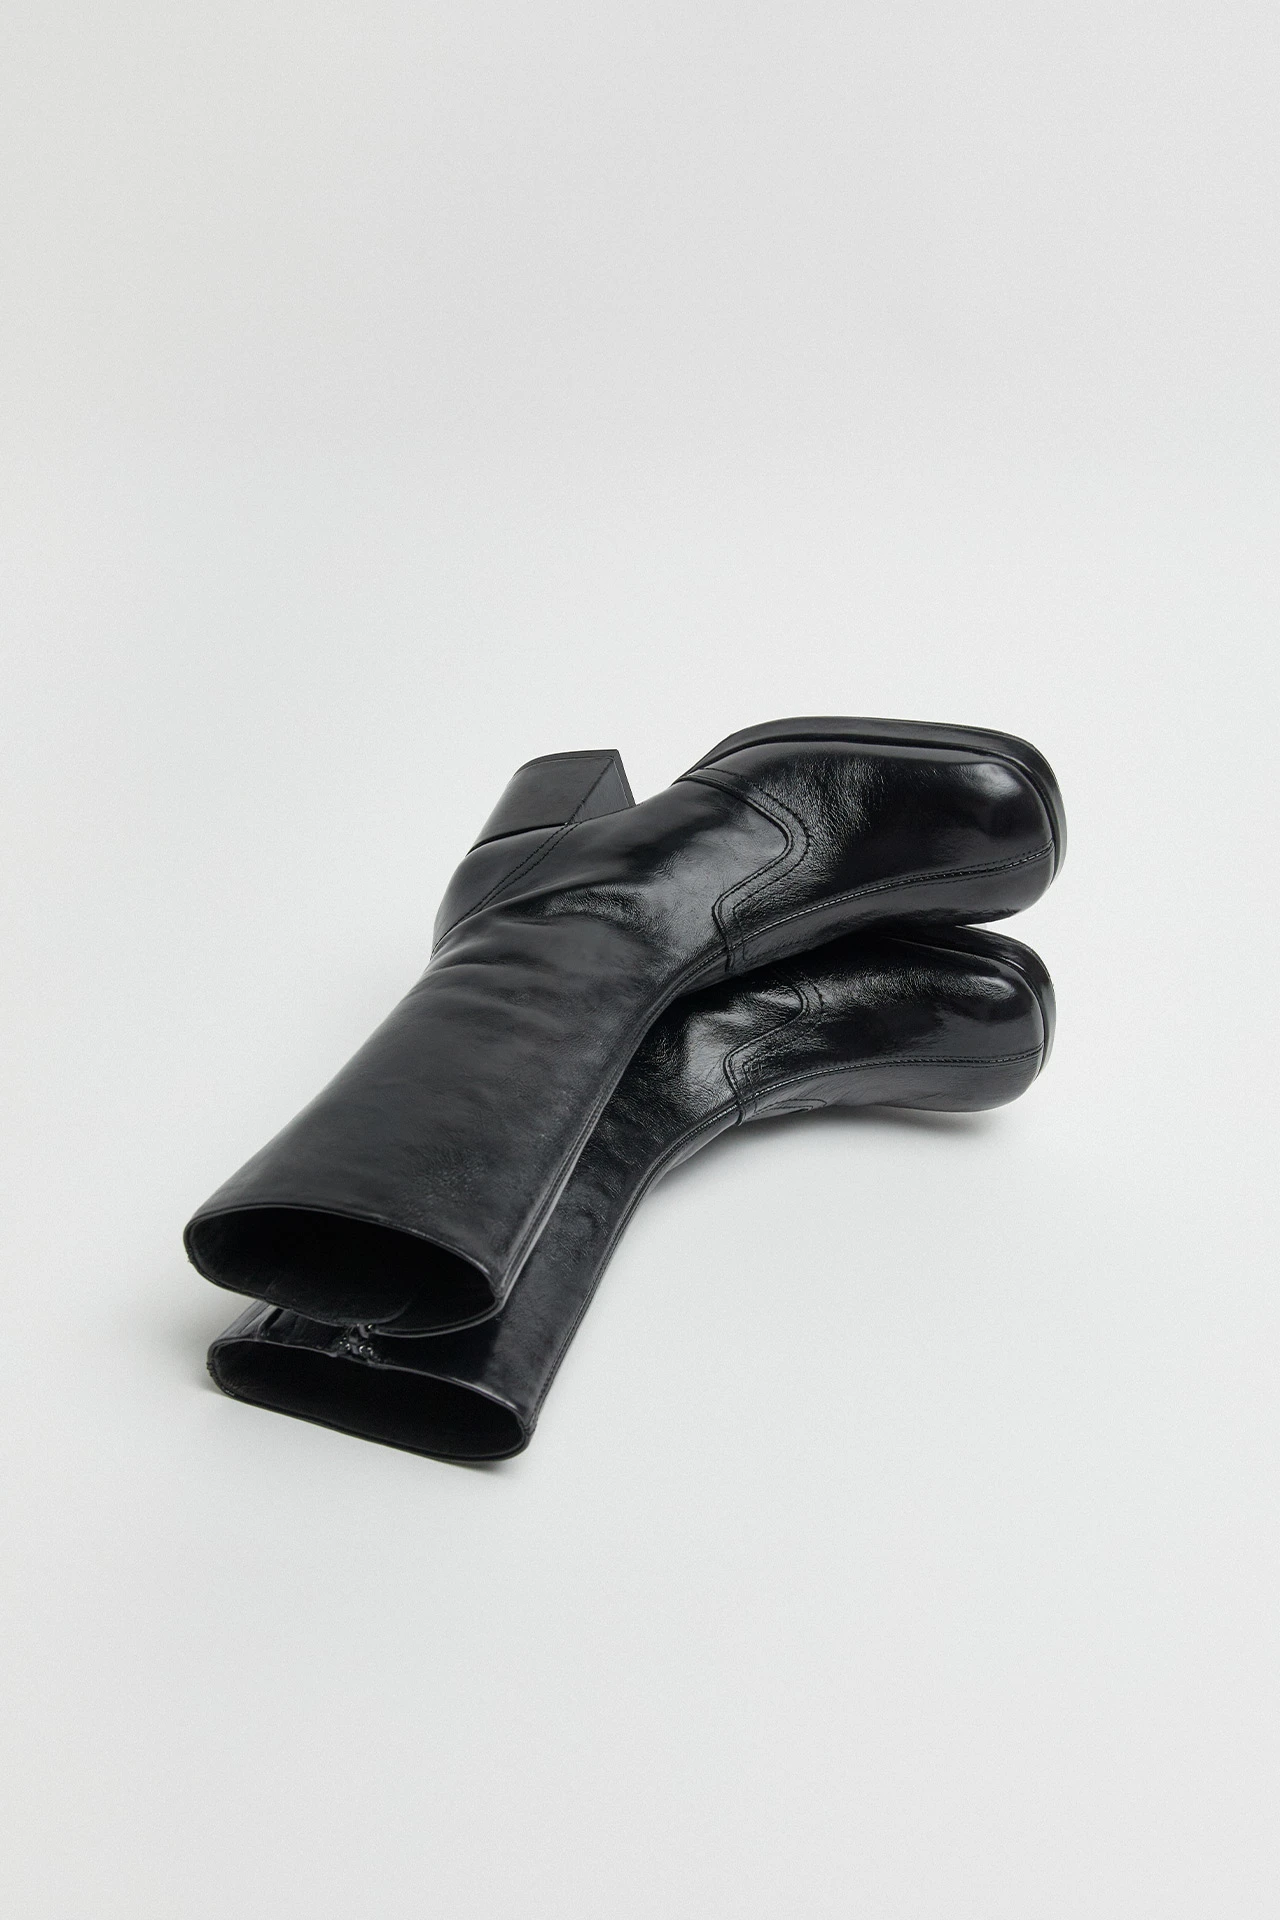 Miista-cass-black-crinkle-boots-03